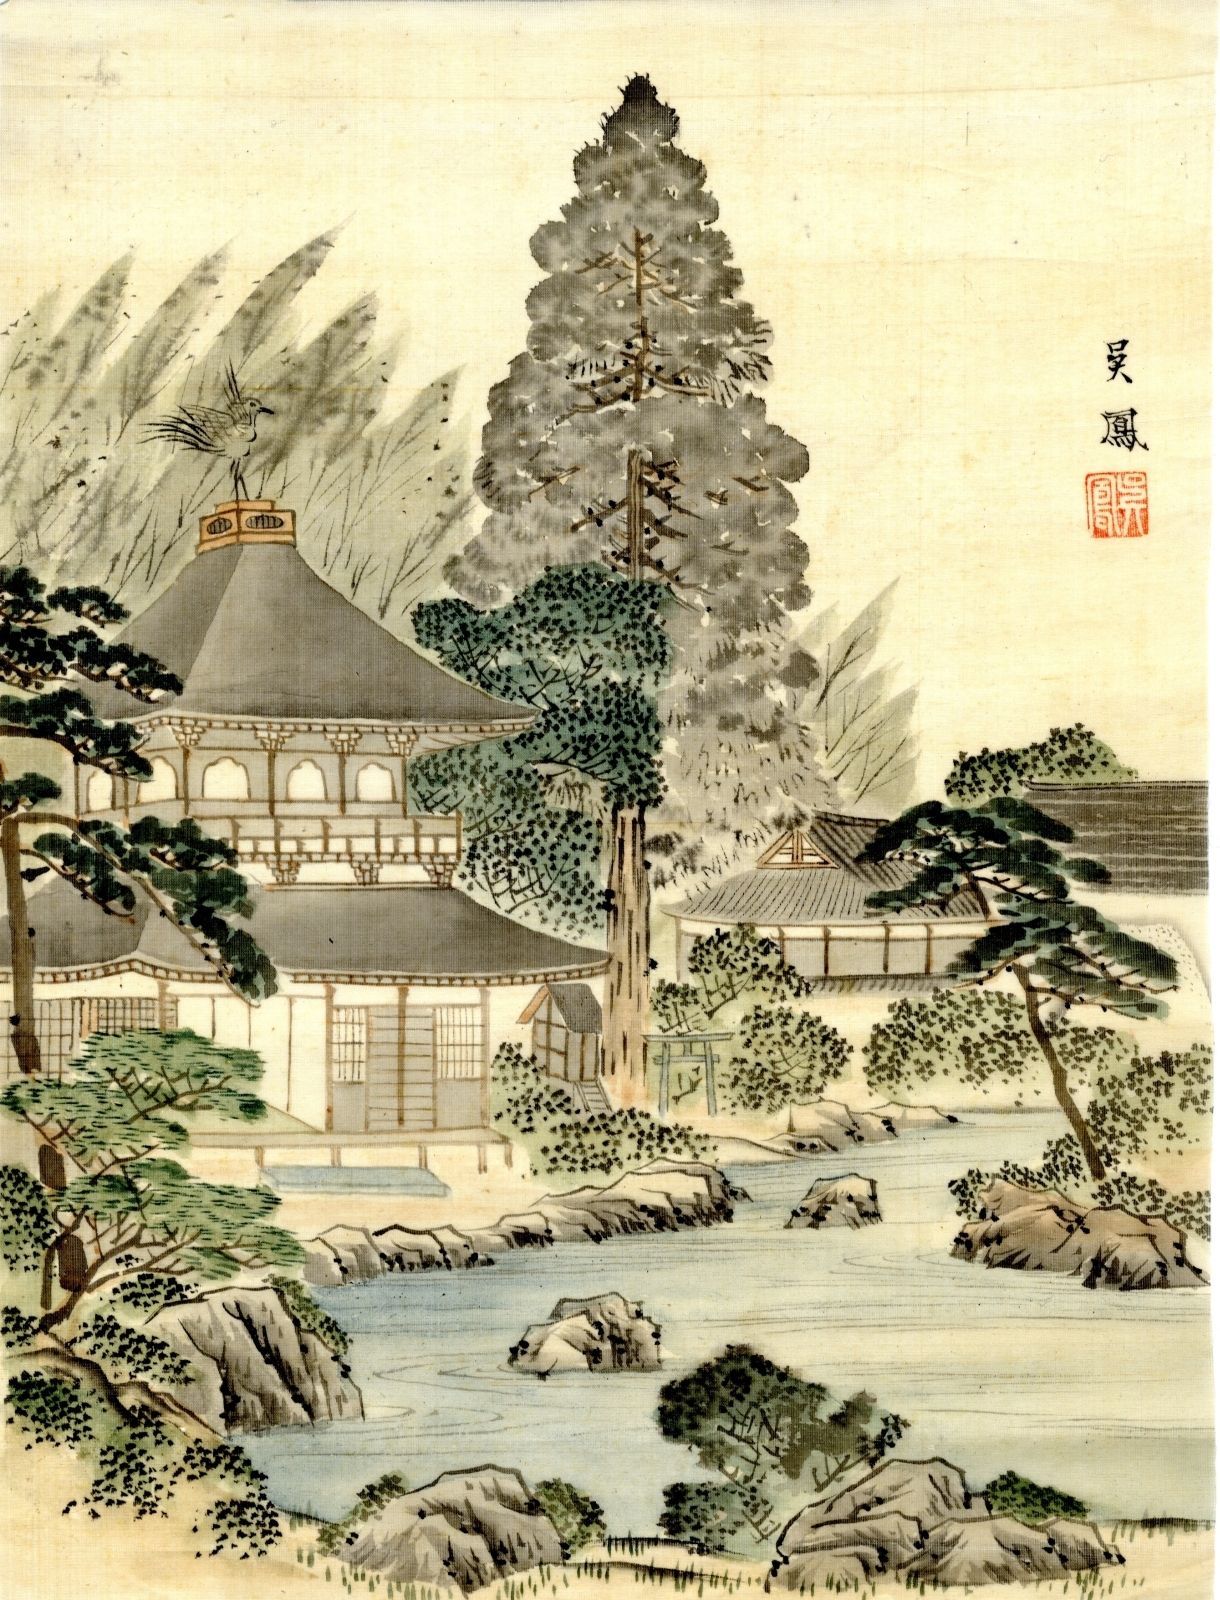 Tomobu Tusche und Farben auf Seide, 30 x 22,5 cm, frühes 20. Jh. Kinkakuji-Tempe&hellip;